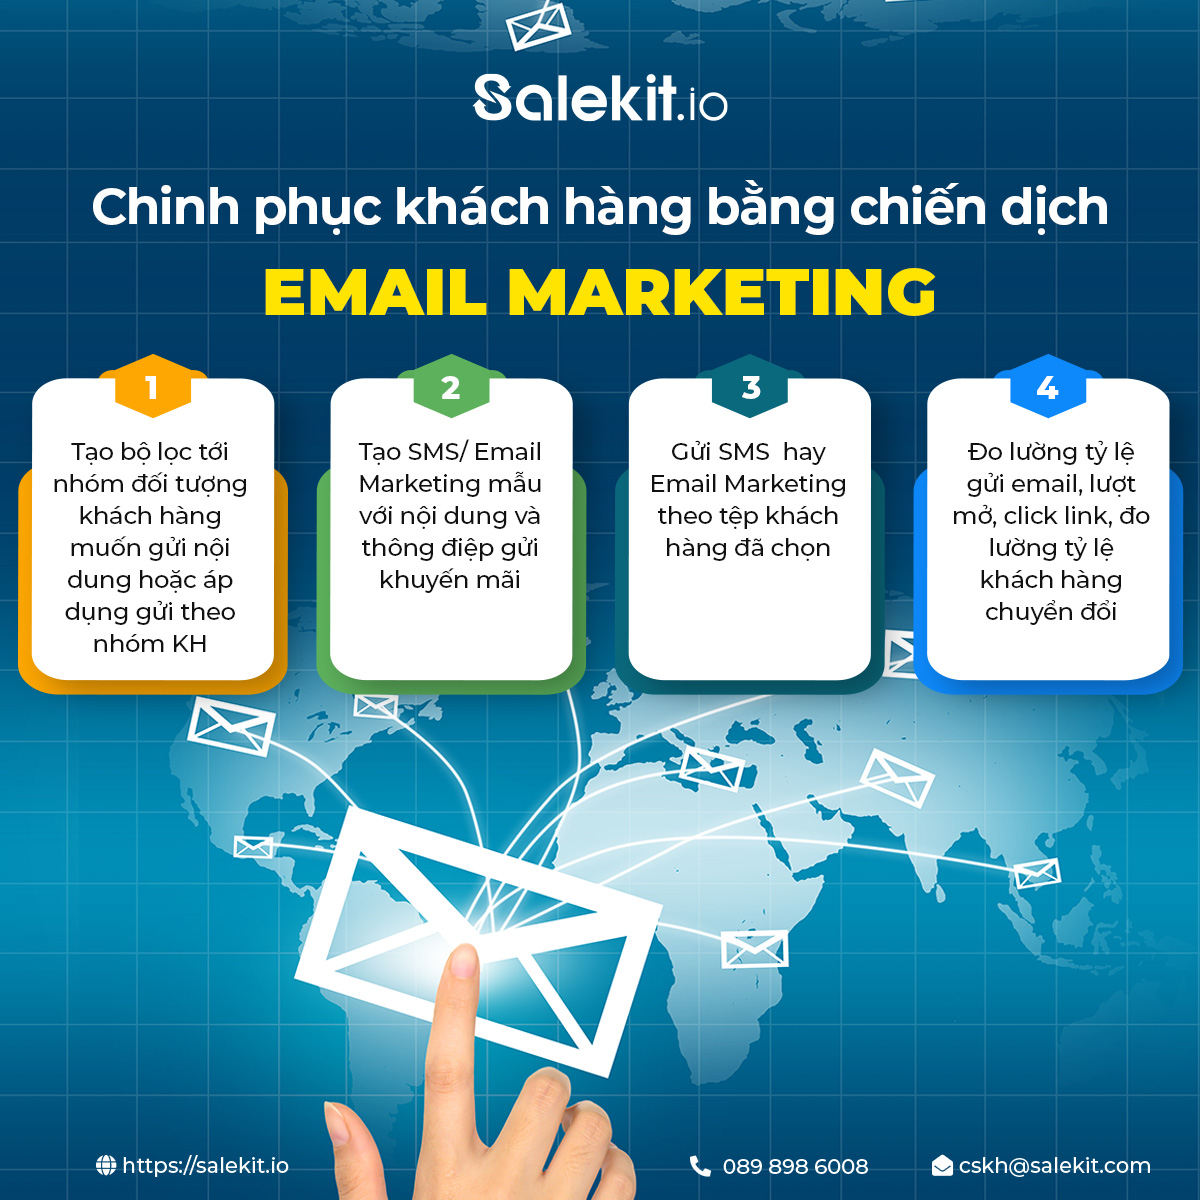 Khám phá ngay để trải nghiệm sức mạnh của email marketing tại Salekit.io